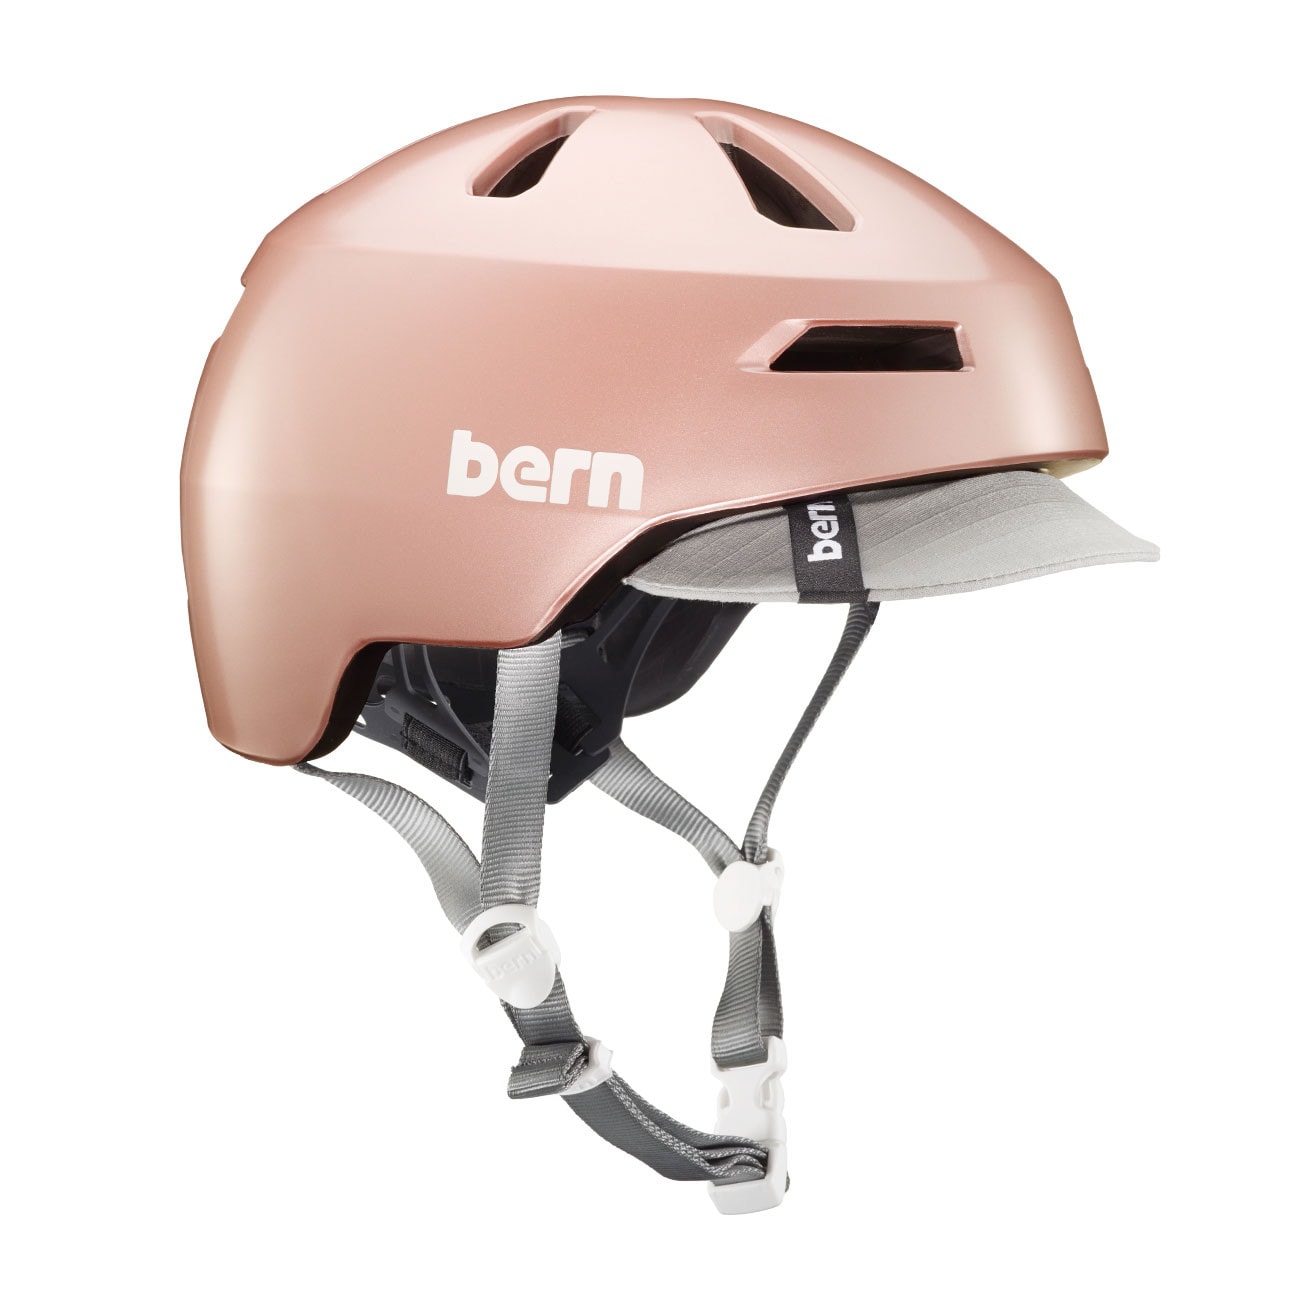 rose gold bike helmet